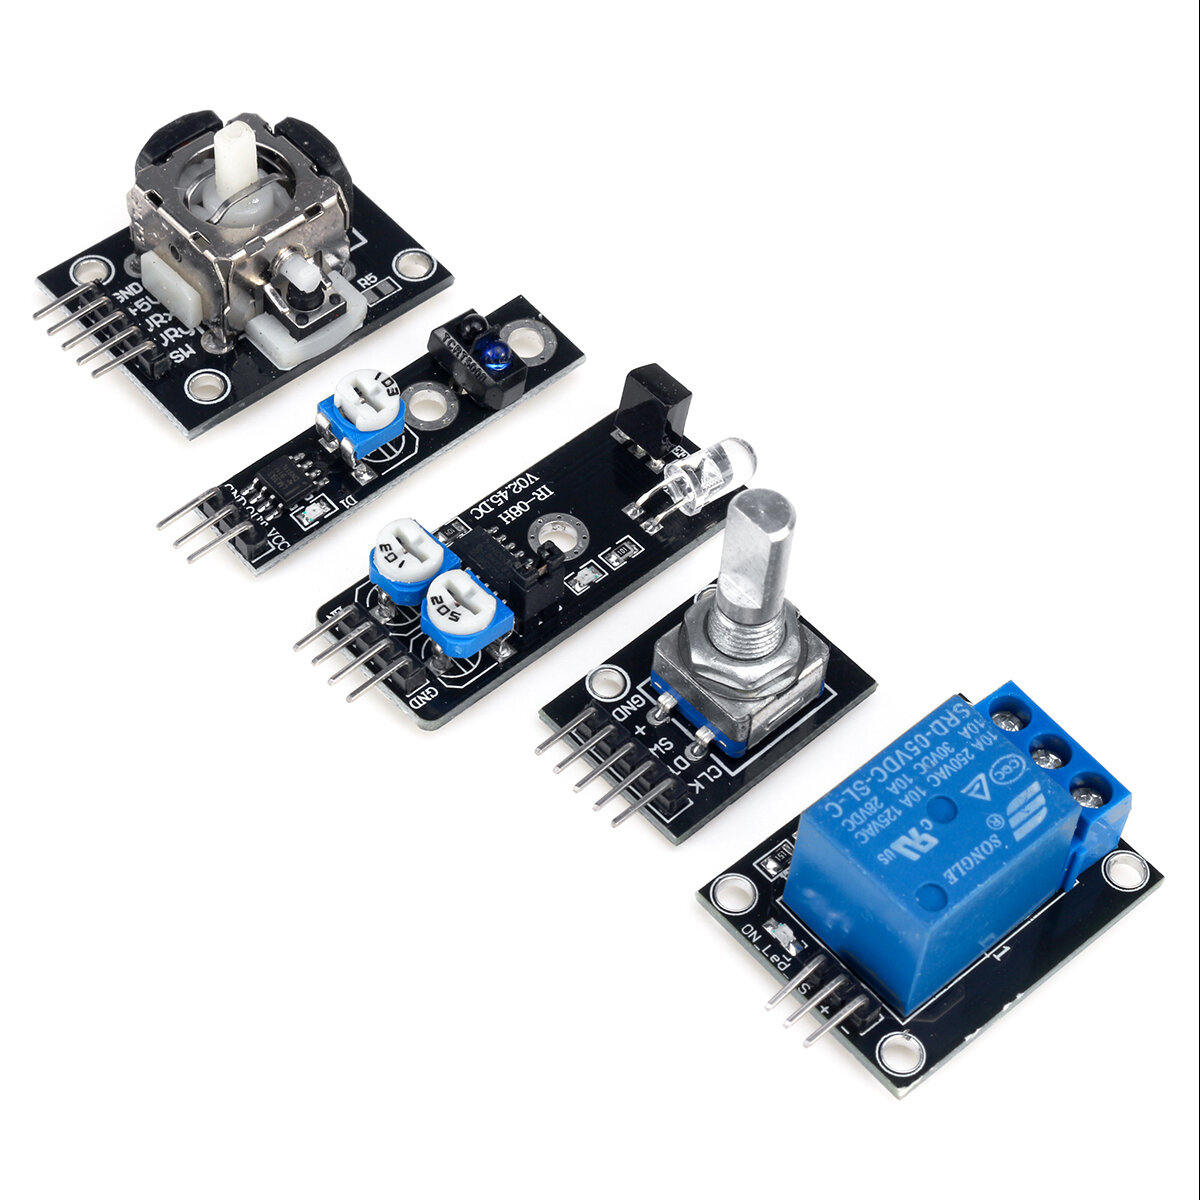 45 IN 1/37 IN 1 Sensor Module Starter Kits Set For Arduino Raspberry Pi Education Bag Package